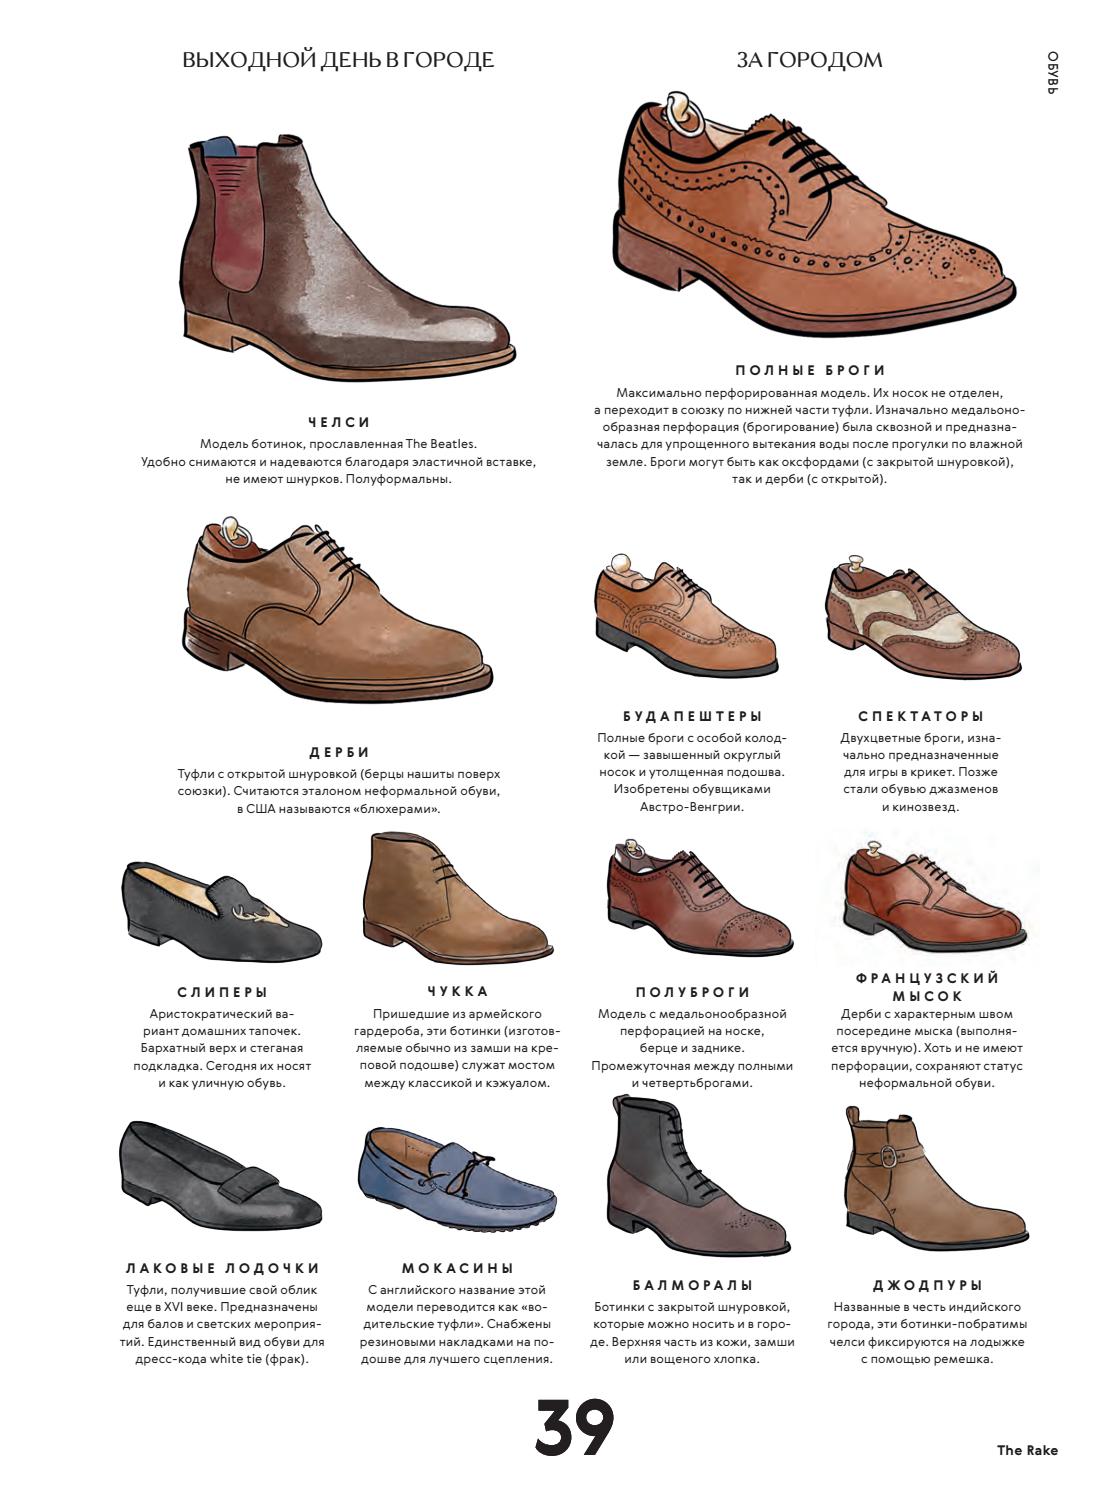 Какие особенности имеет мужская обувь Zara Каковы особенности, обзор моделей, материалы и цвета Каков размерный ряд мужской обуви Zara Как выбрать обувь, какими рекомендациями пользоваться, что иметь в виду